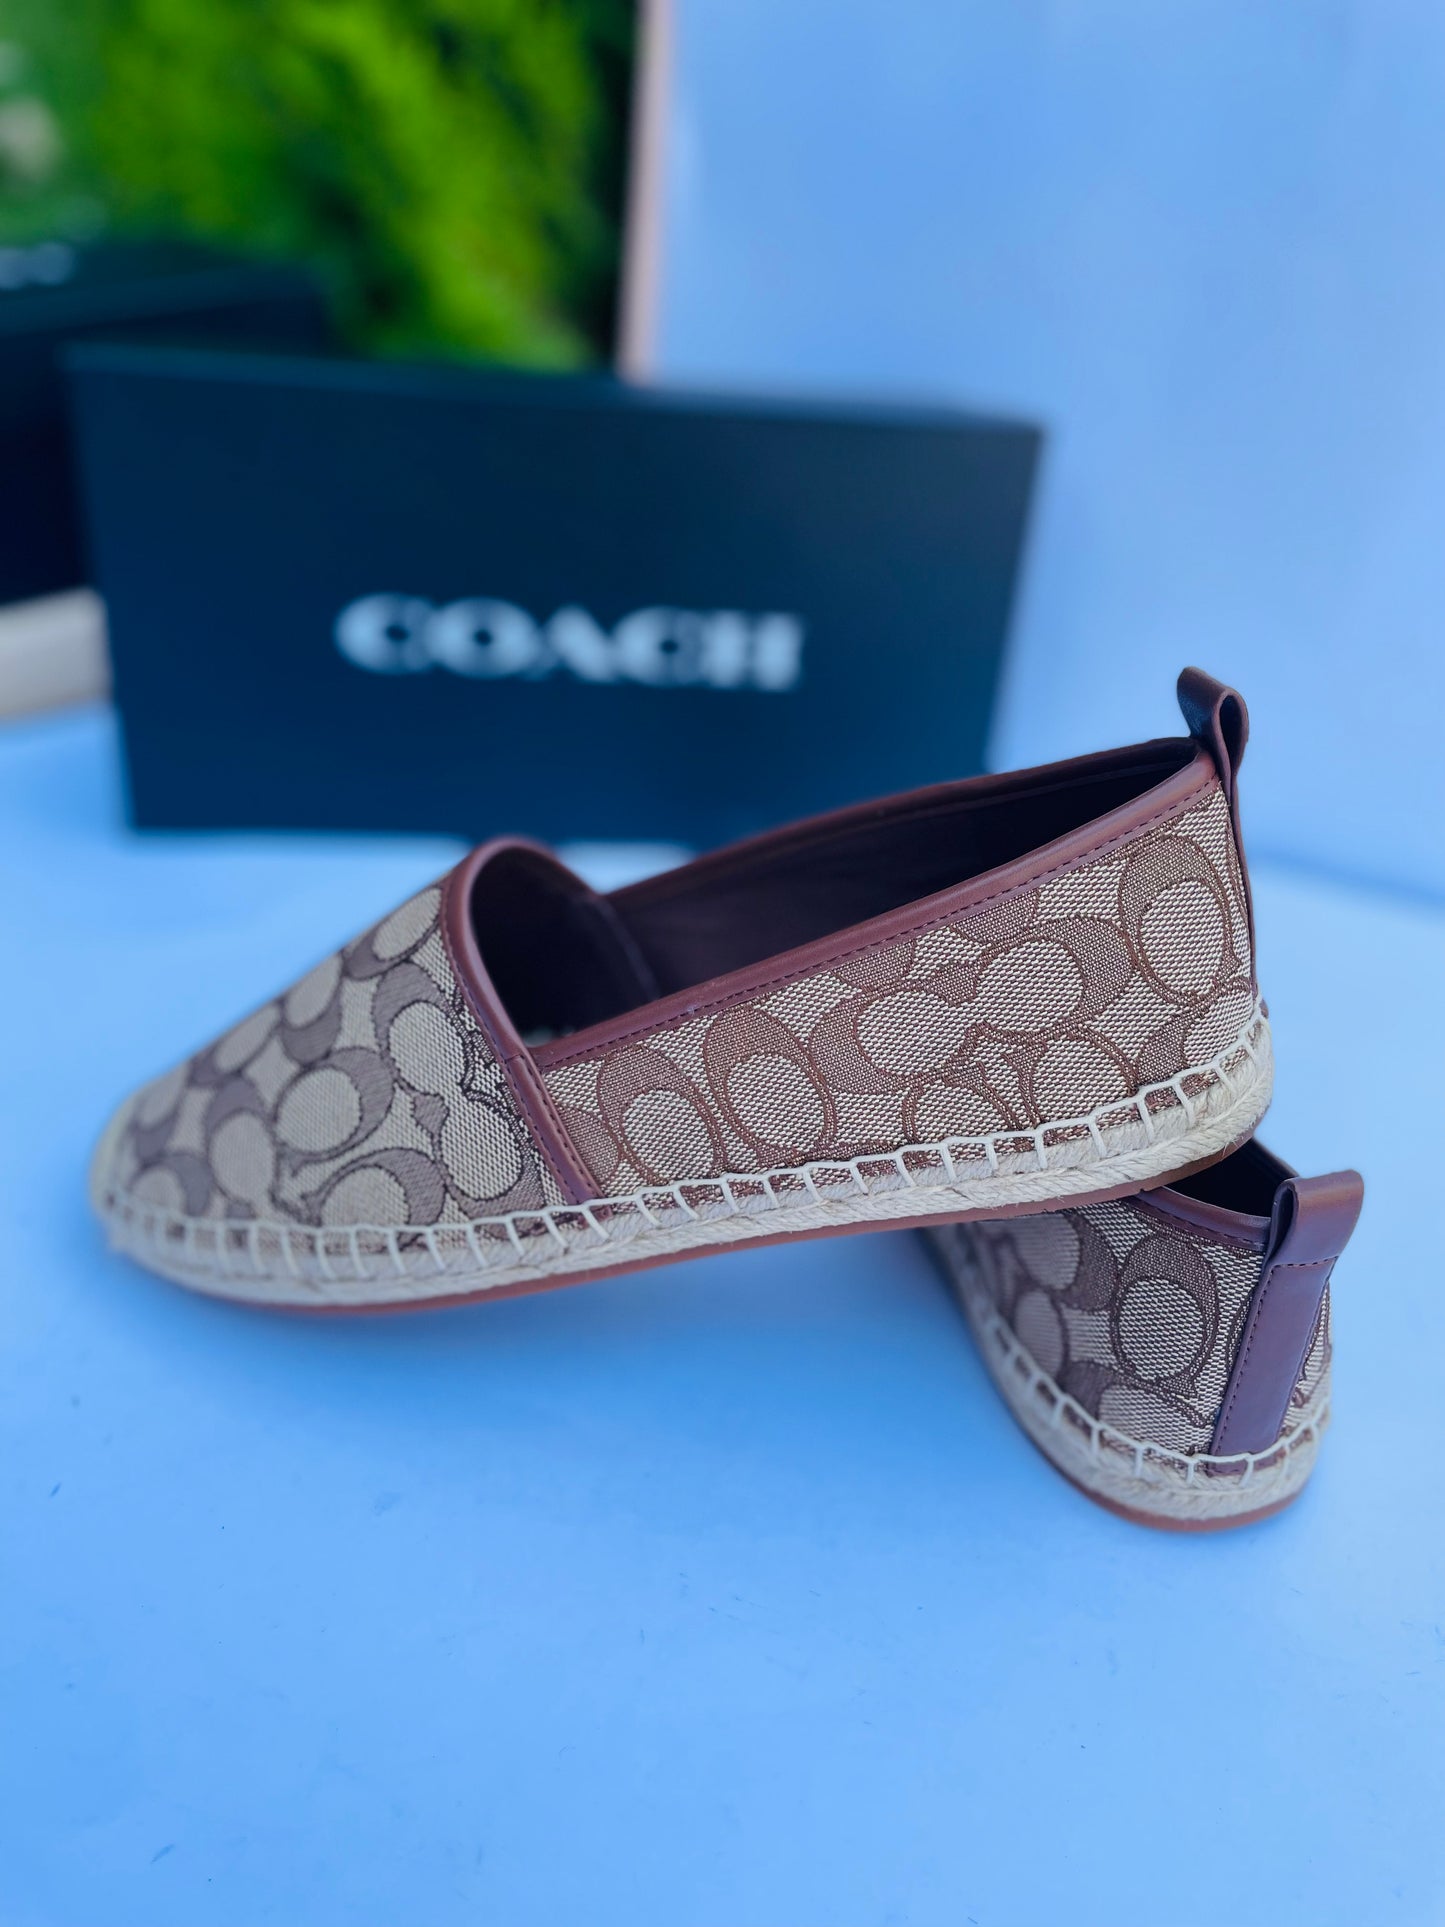 Coach shoes